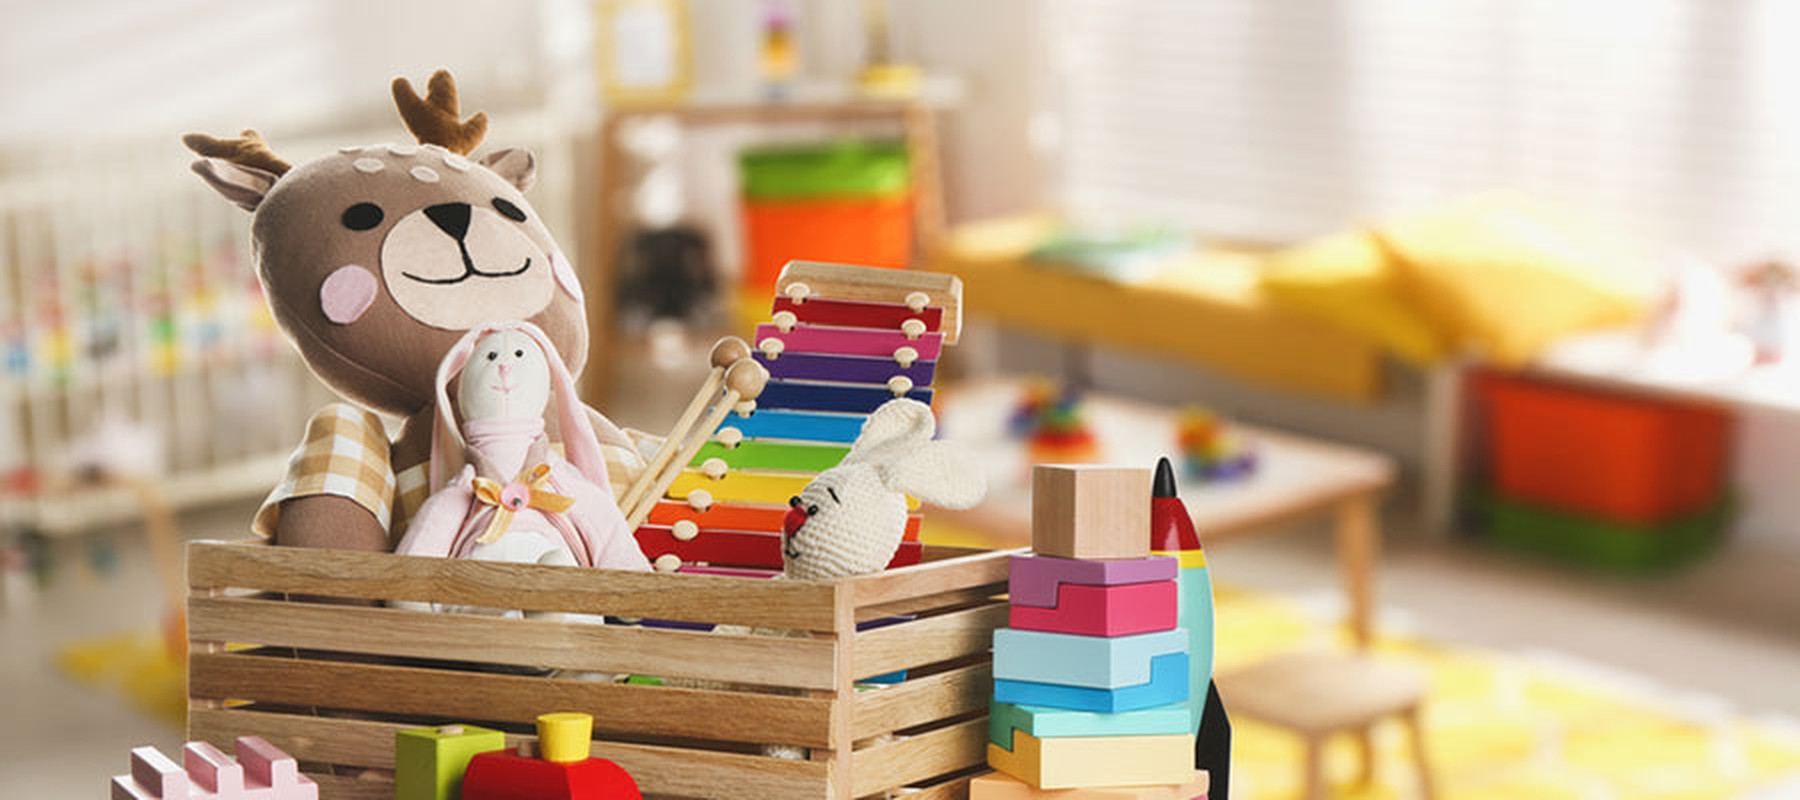 Juguetes coloridos para bebés en una habitación